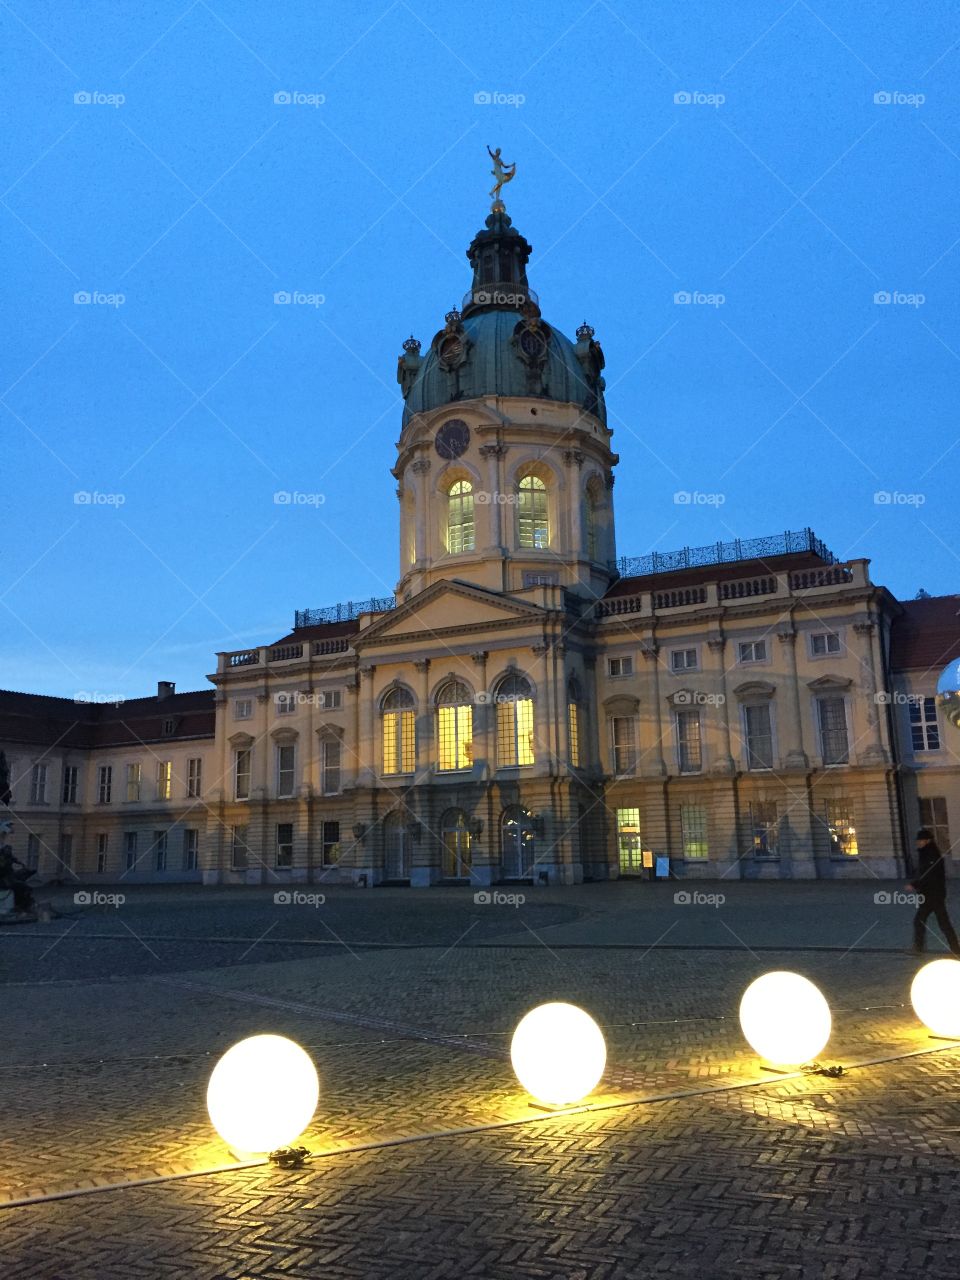 Charlottenburg Palace - Berlin